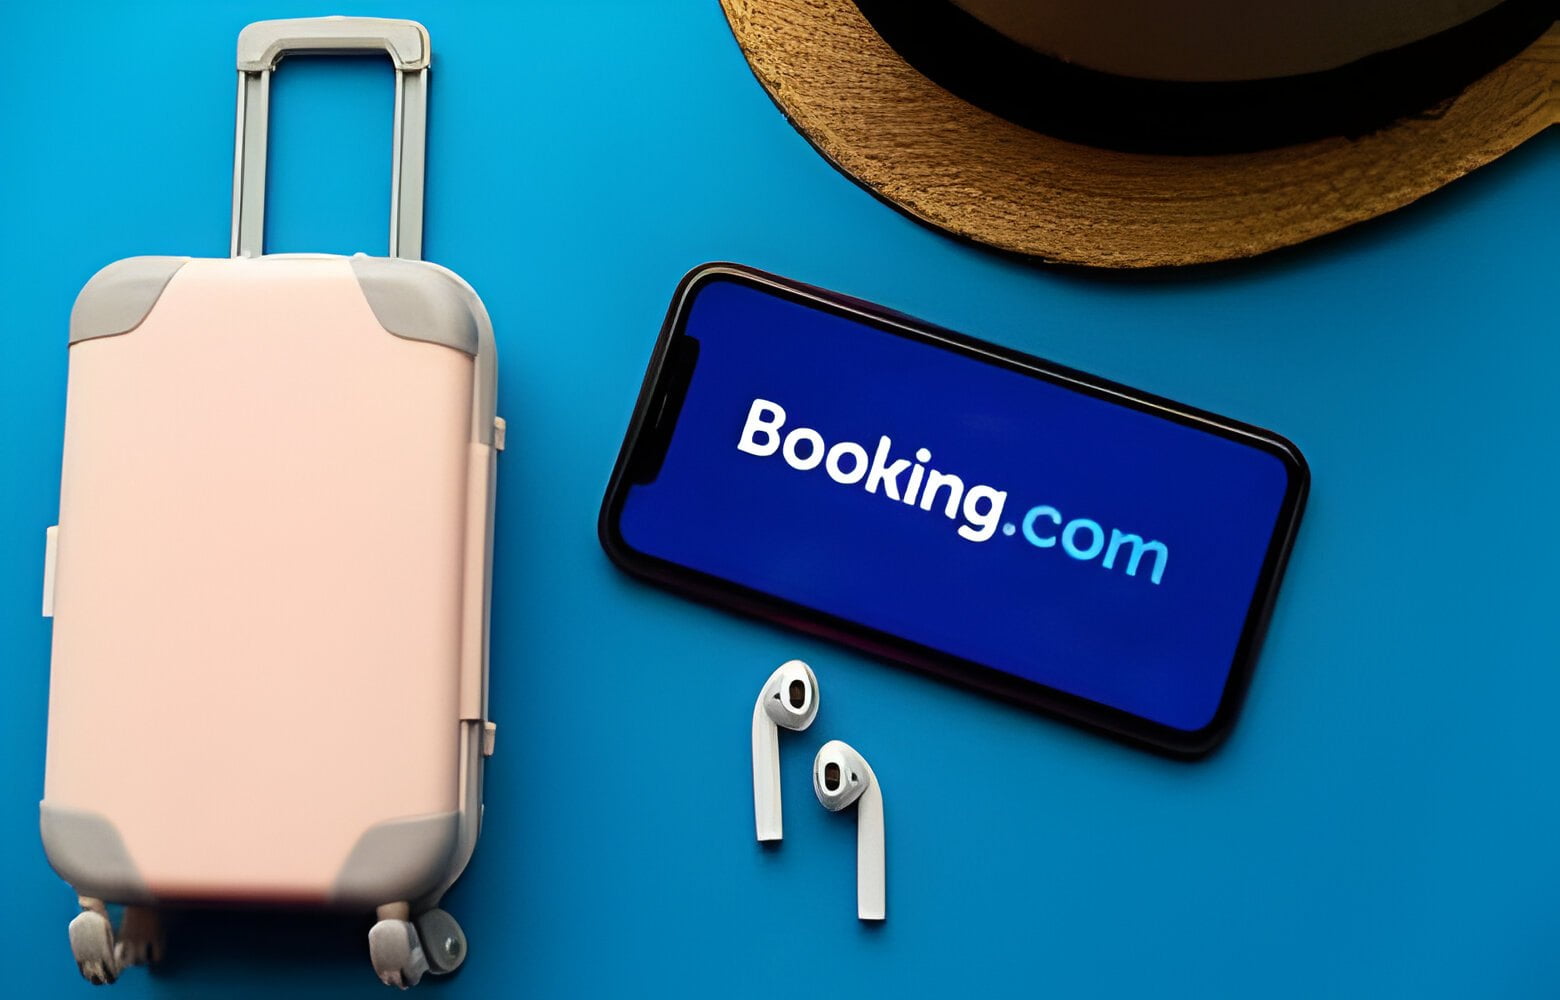 التسويق بالعمولة, Booking.com, كسب المال من الإنترنت, عمولة Booking.com, شراكة Booking.com, برنامج شركاء Booking.com, حجز فنادق, سياحة, سفر, تسويق السفر